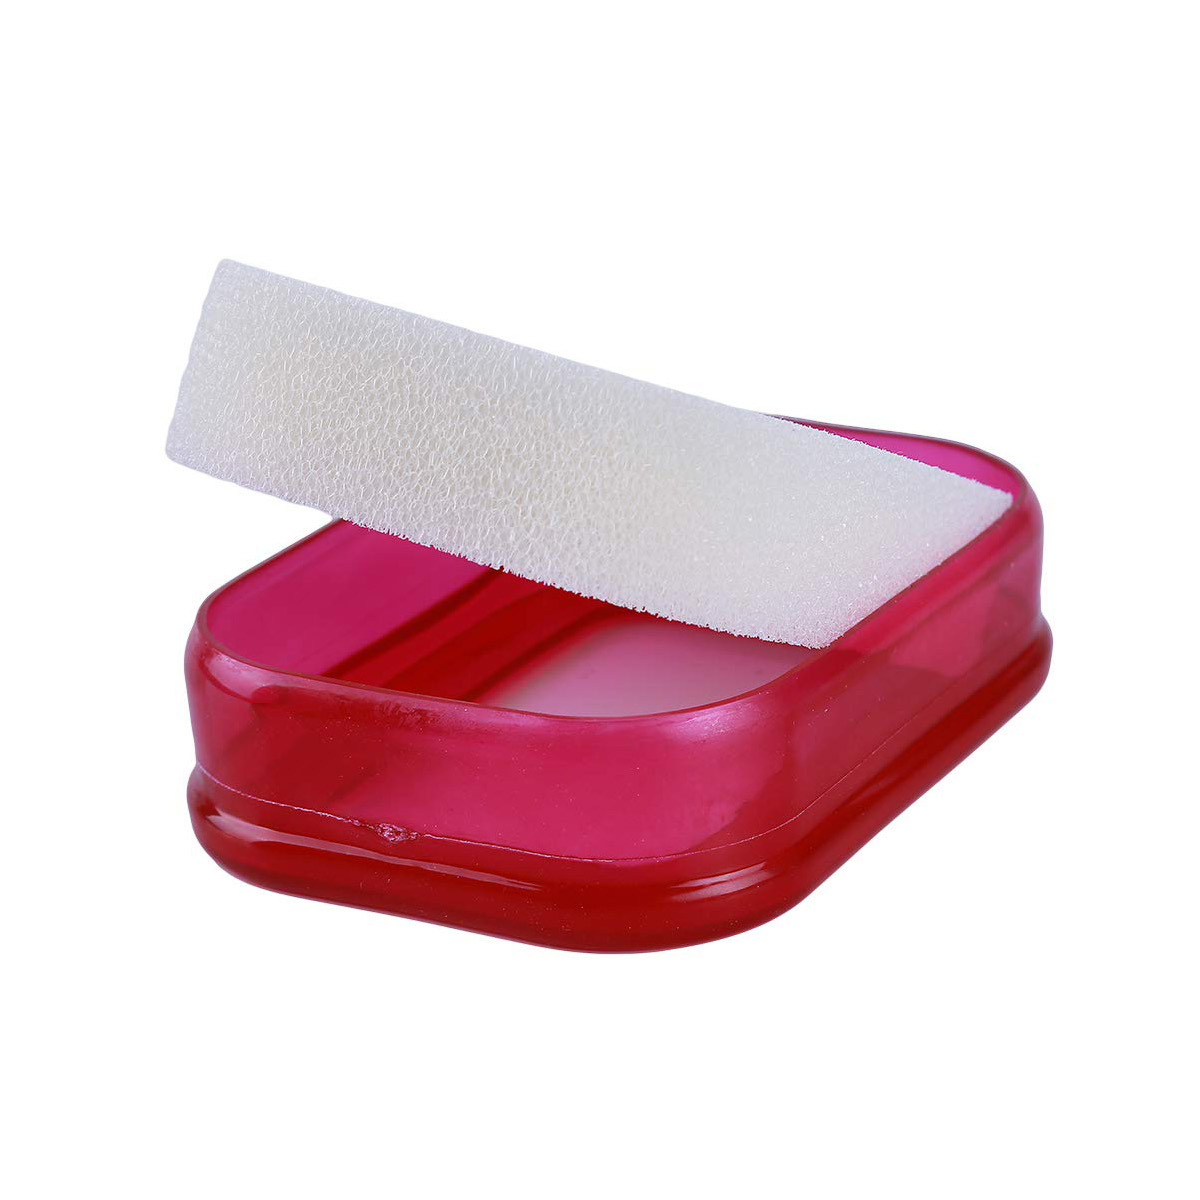 фото Мультифункциональная губка мыльница в силиконовой коробке, красный, bh-ash-01 blonder home